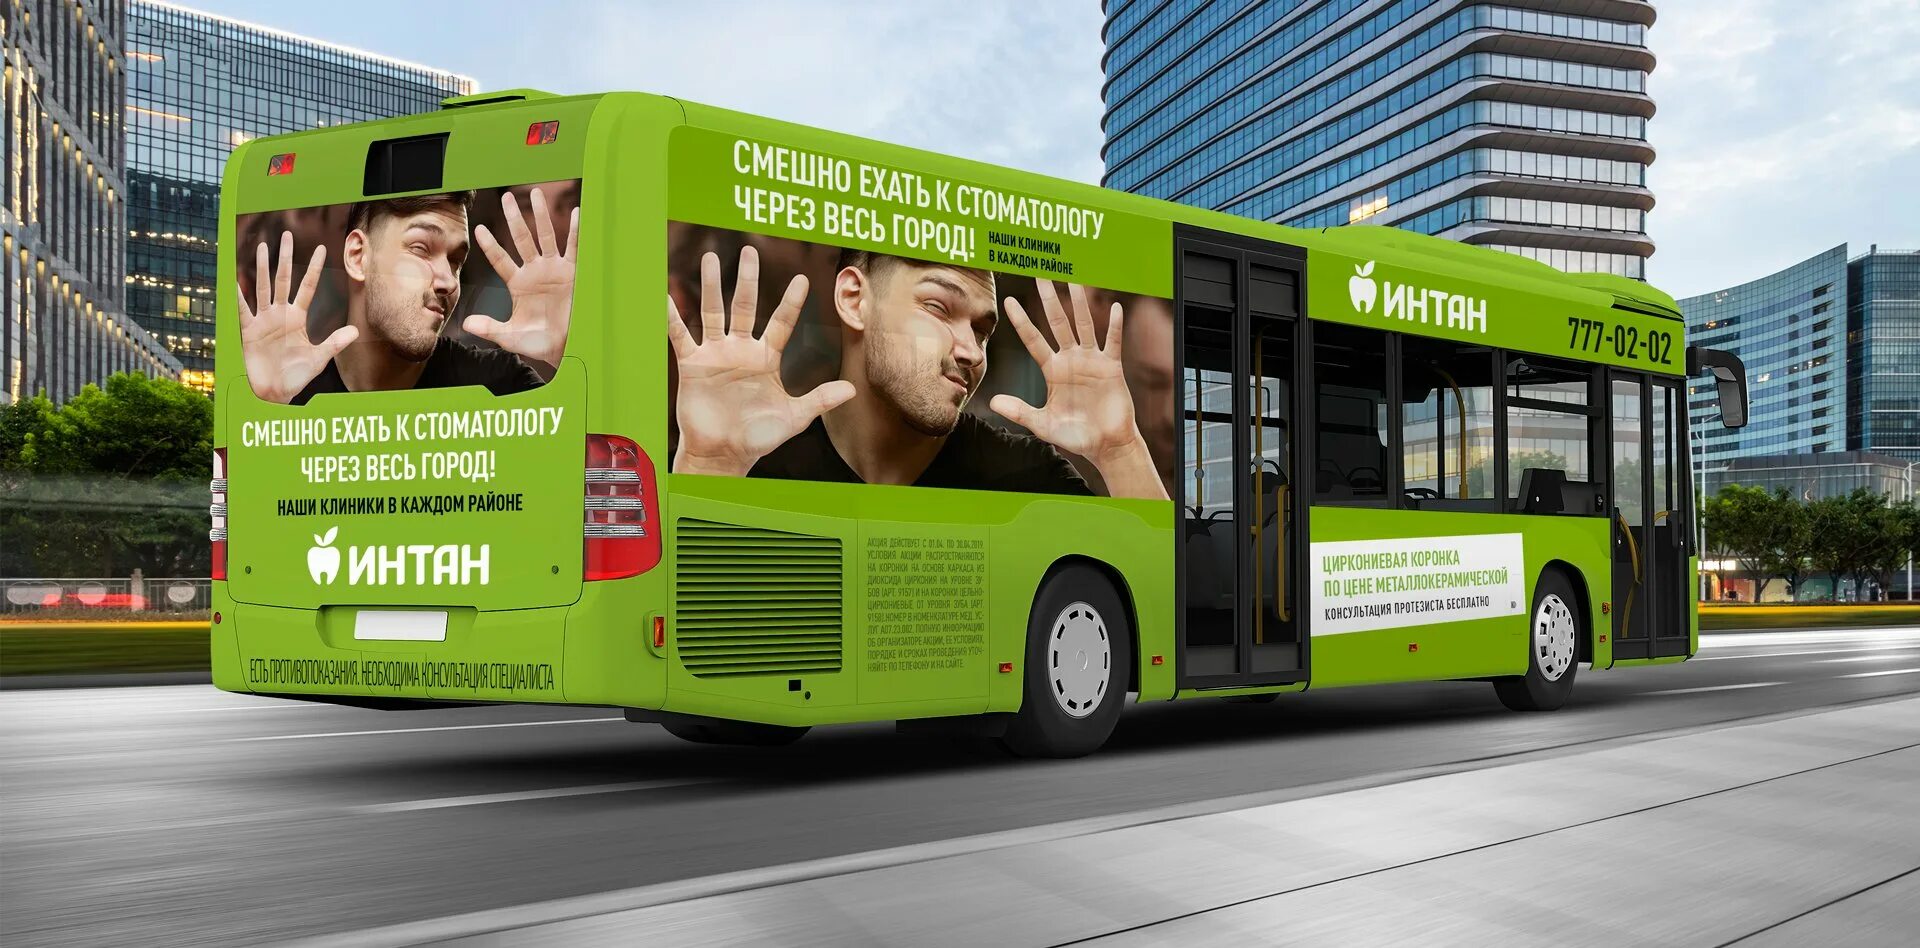 Автобусы из центра в городе. Реклама на автобусах. Брендирование автобуса. Рекламный автобус. Реклама на маршрутках.